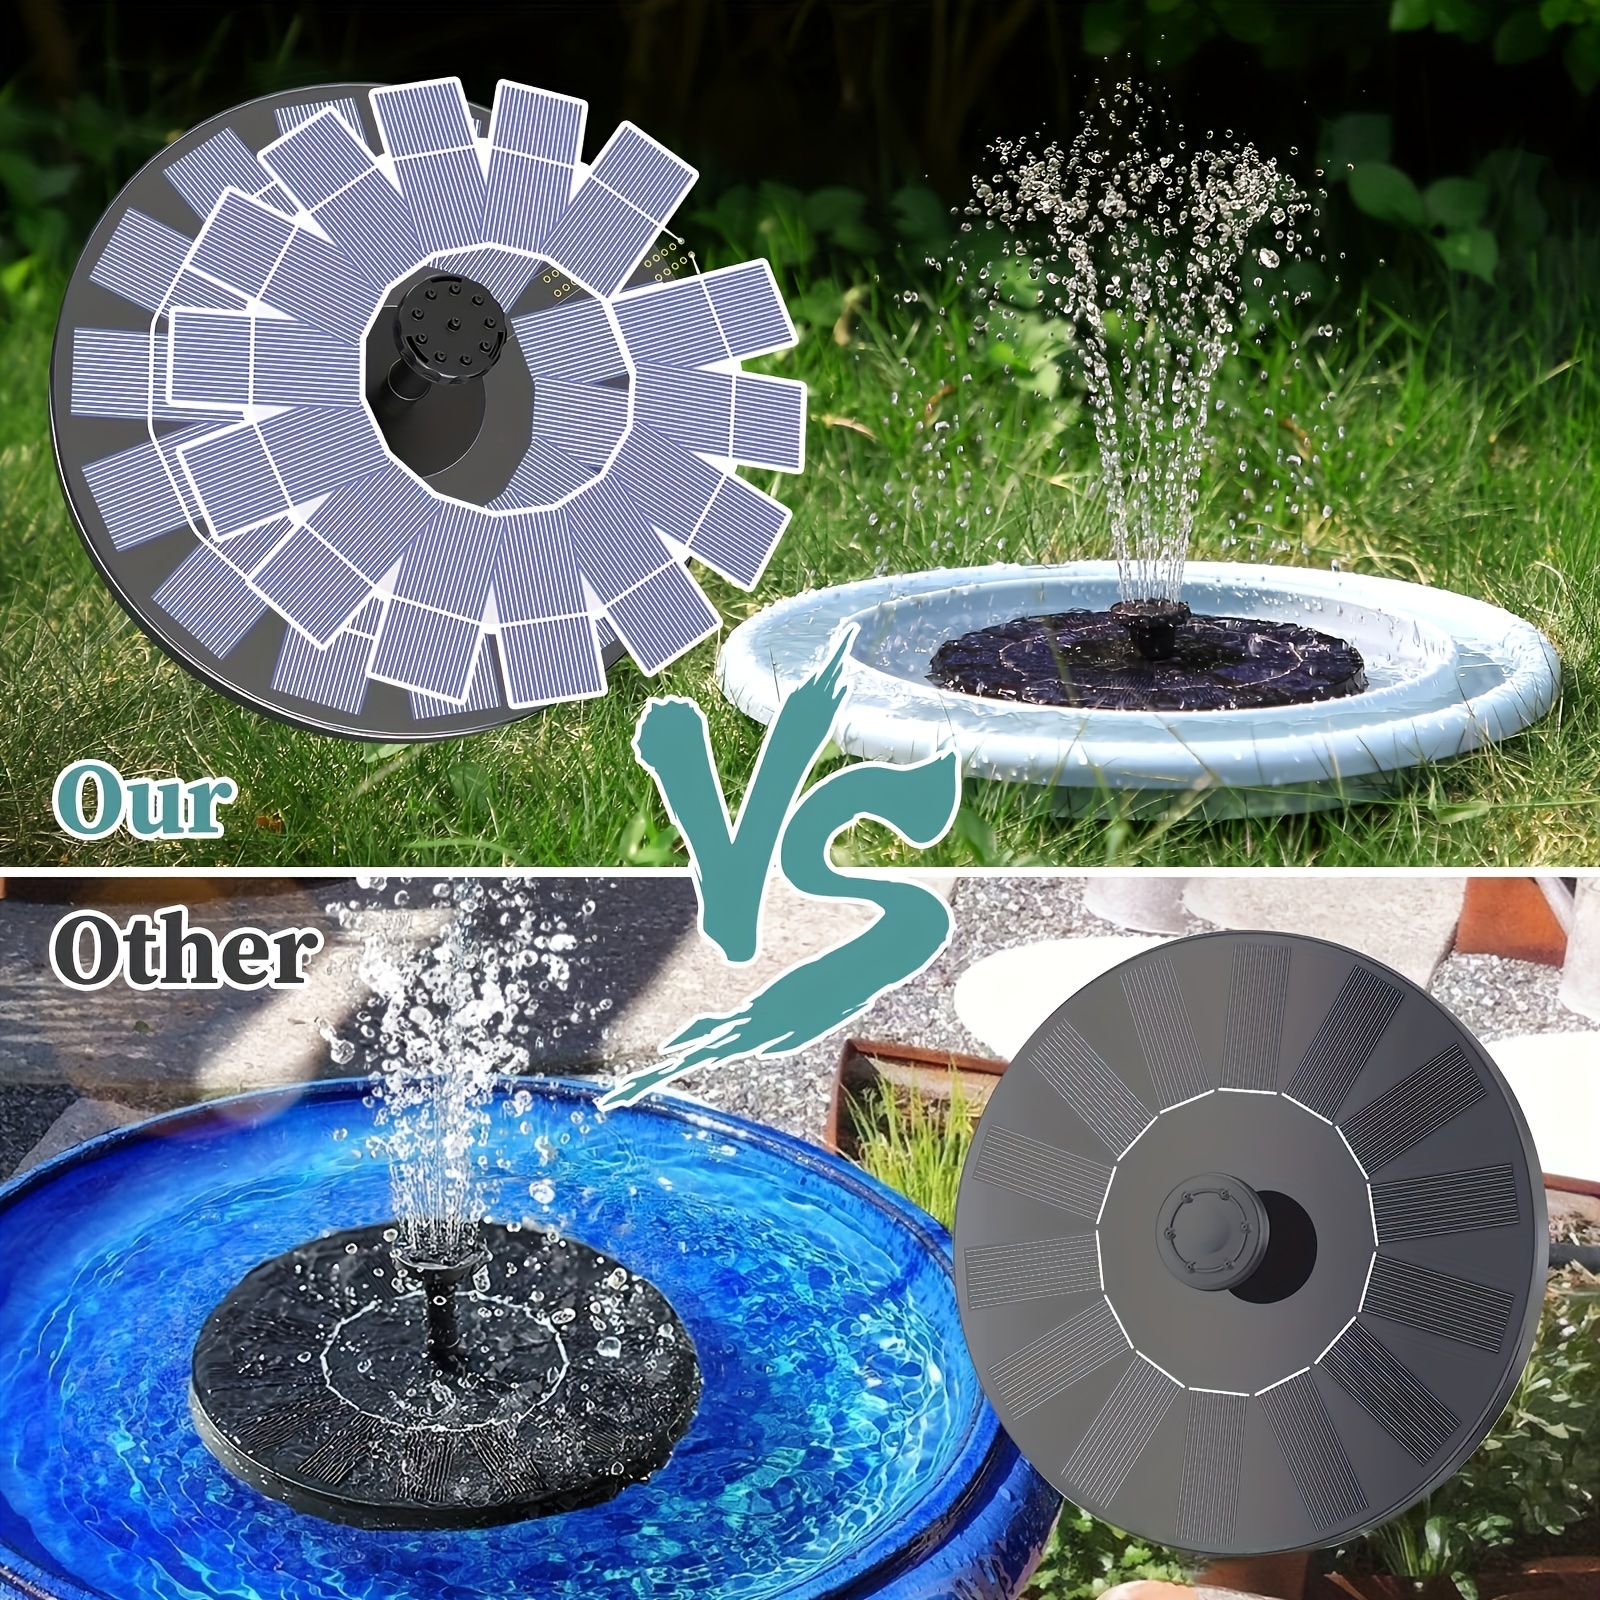 1pc fonte solar com 6 bicos, fonte de água solar de 2,5 W Fonte de água movida a energia solar DIY kit para jardim, lagoas, piscina, tanque de peixes, ao ar livre